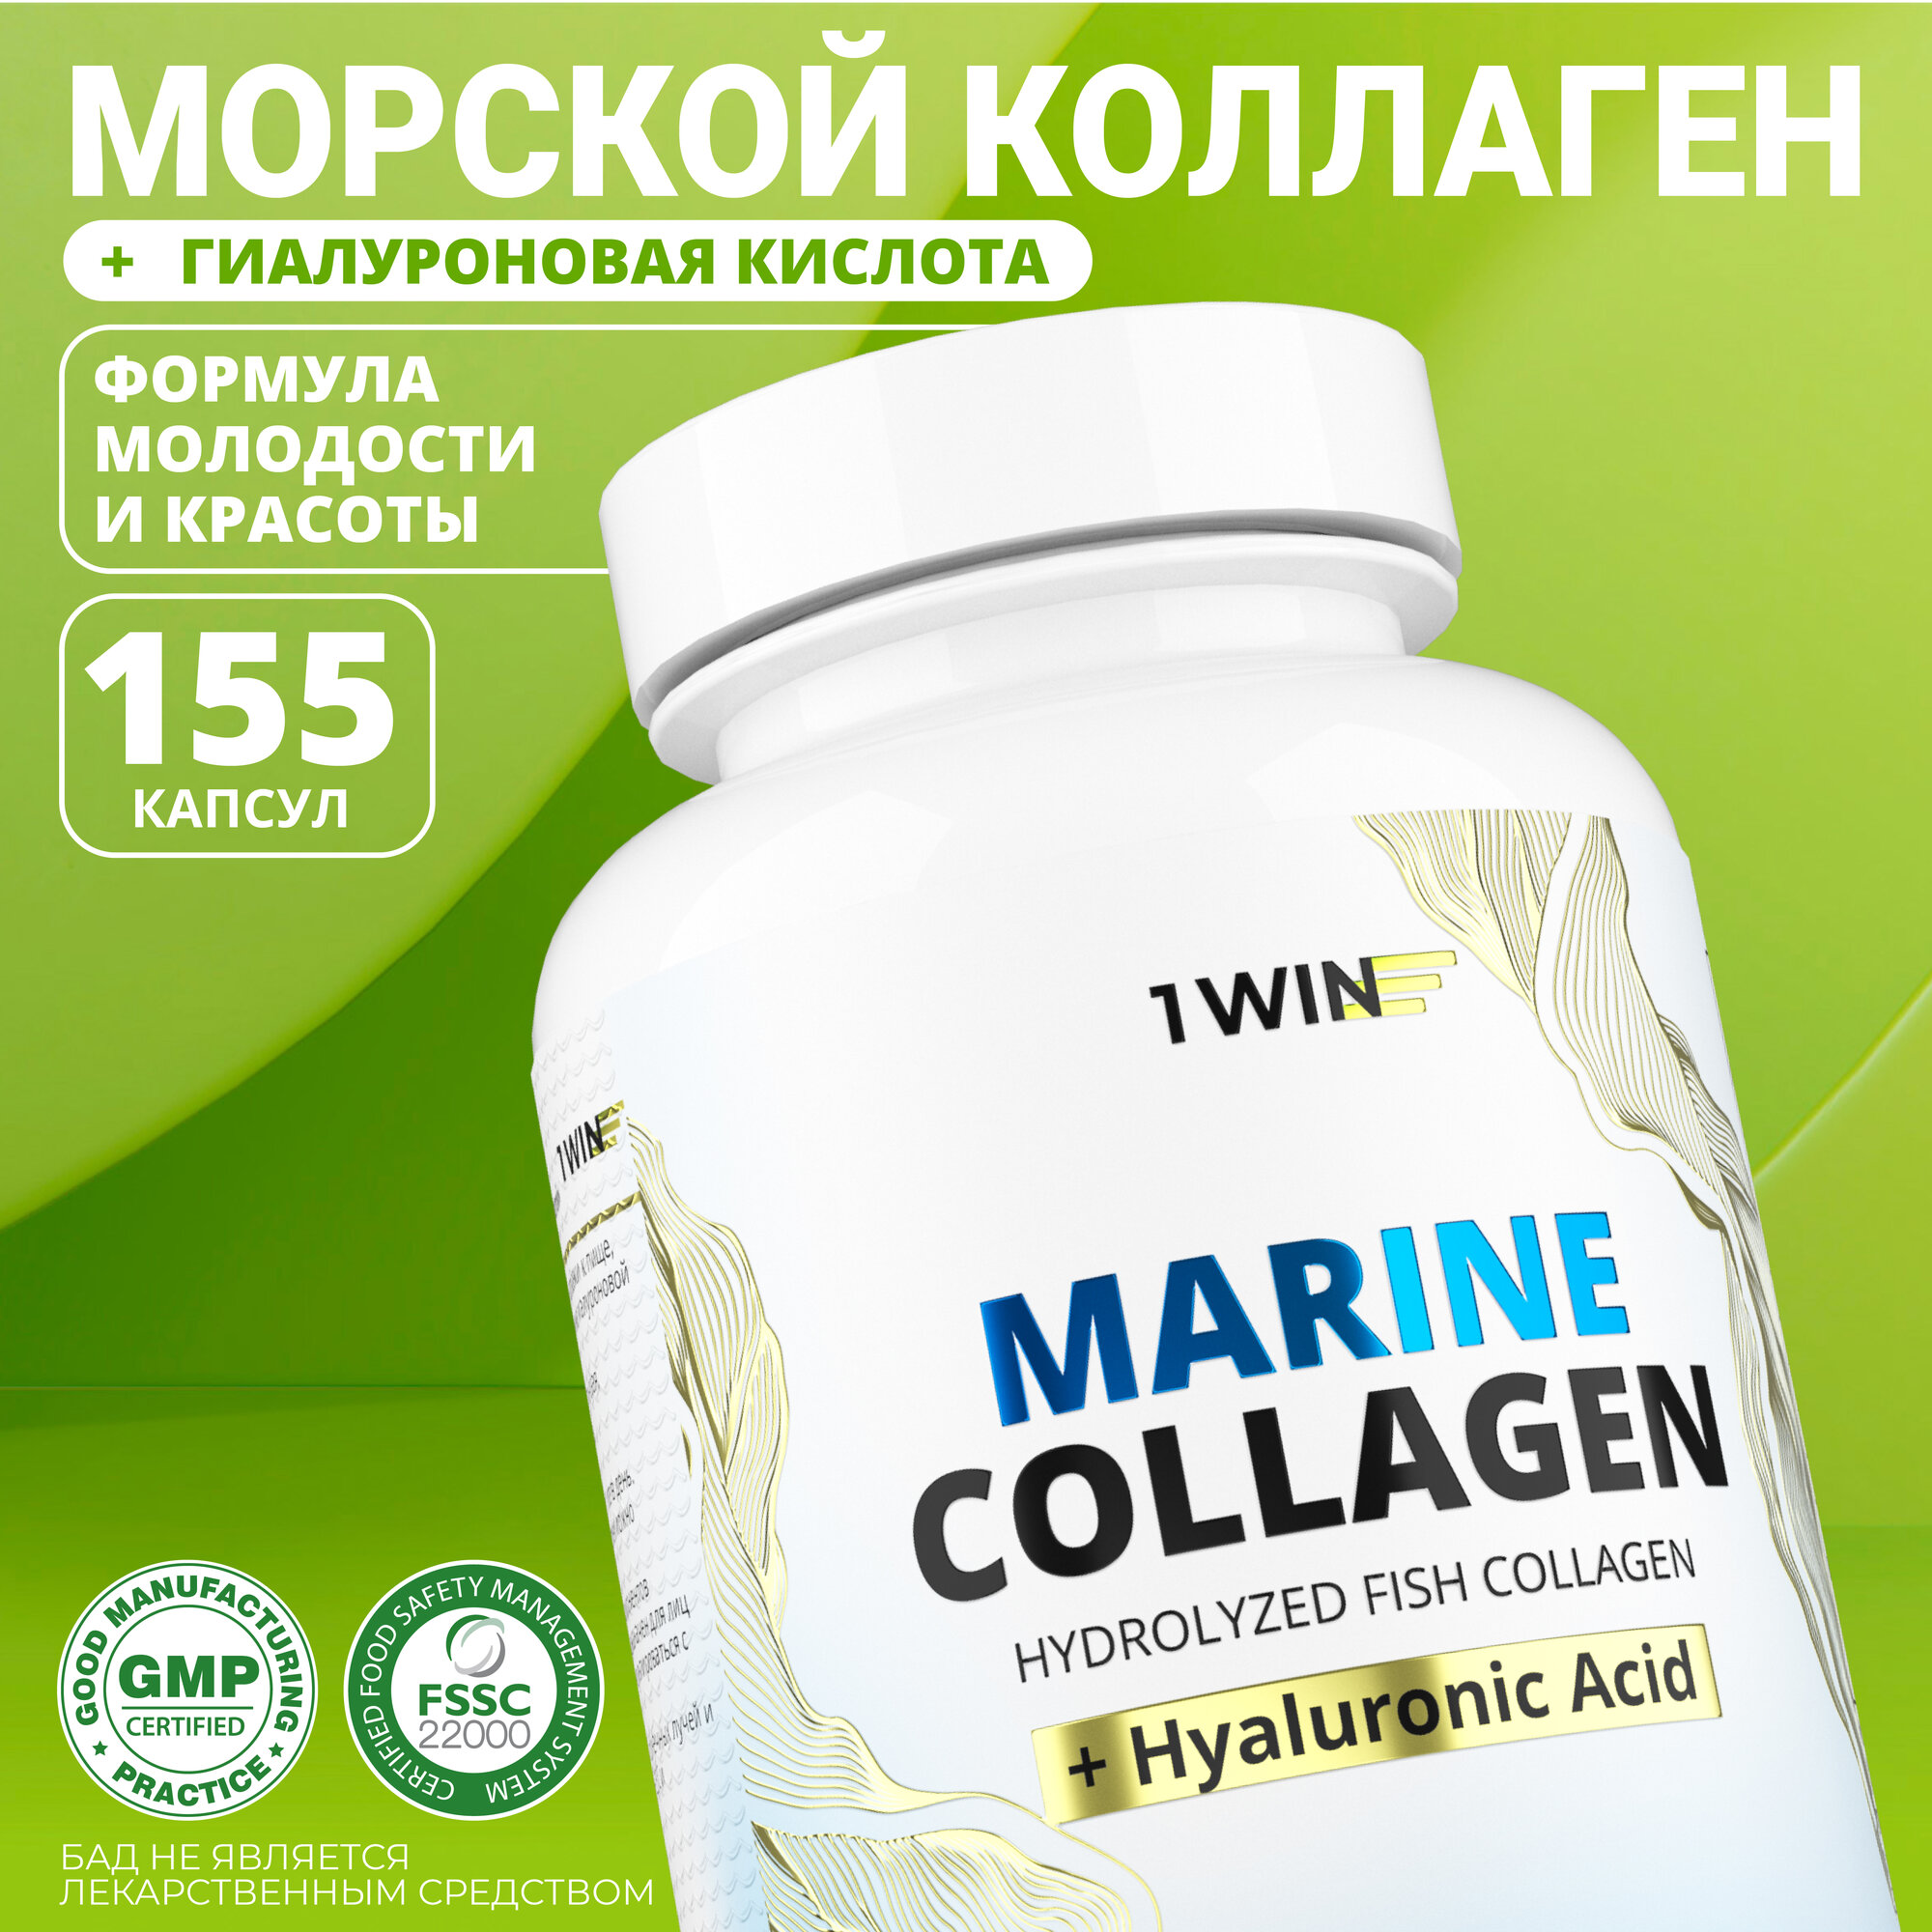 Морской коллаген с гиалуроновой кислотой 1WIN collagen для кожи, волос и суставов, 155 капсул